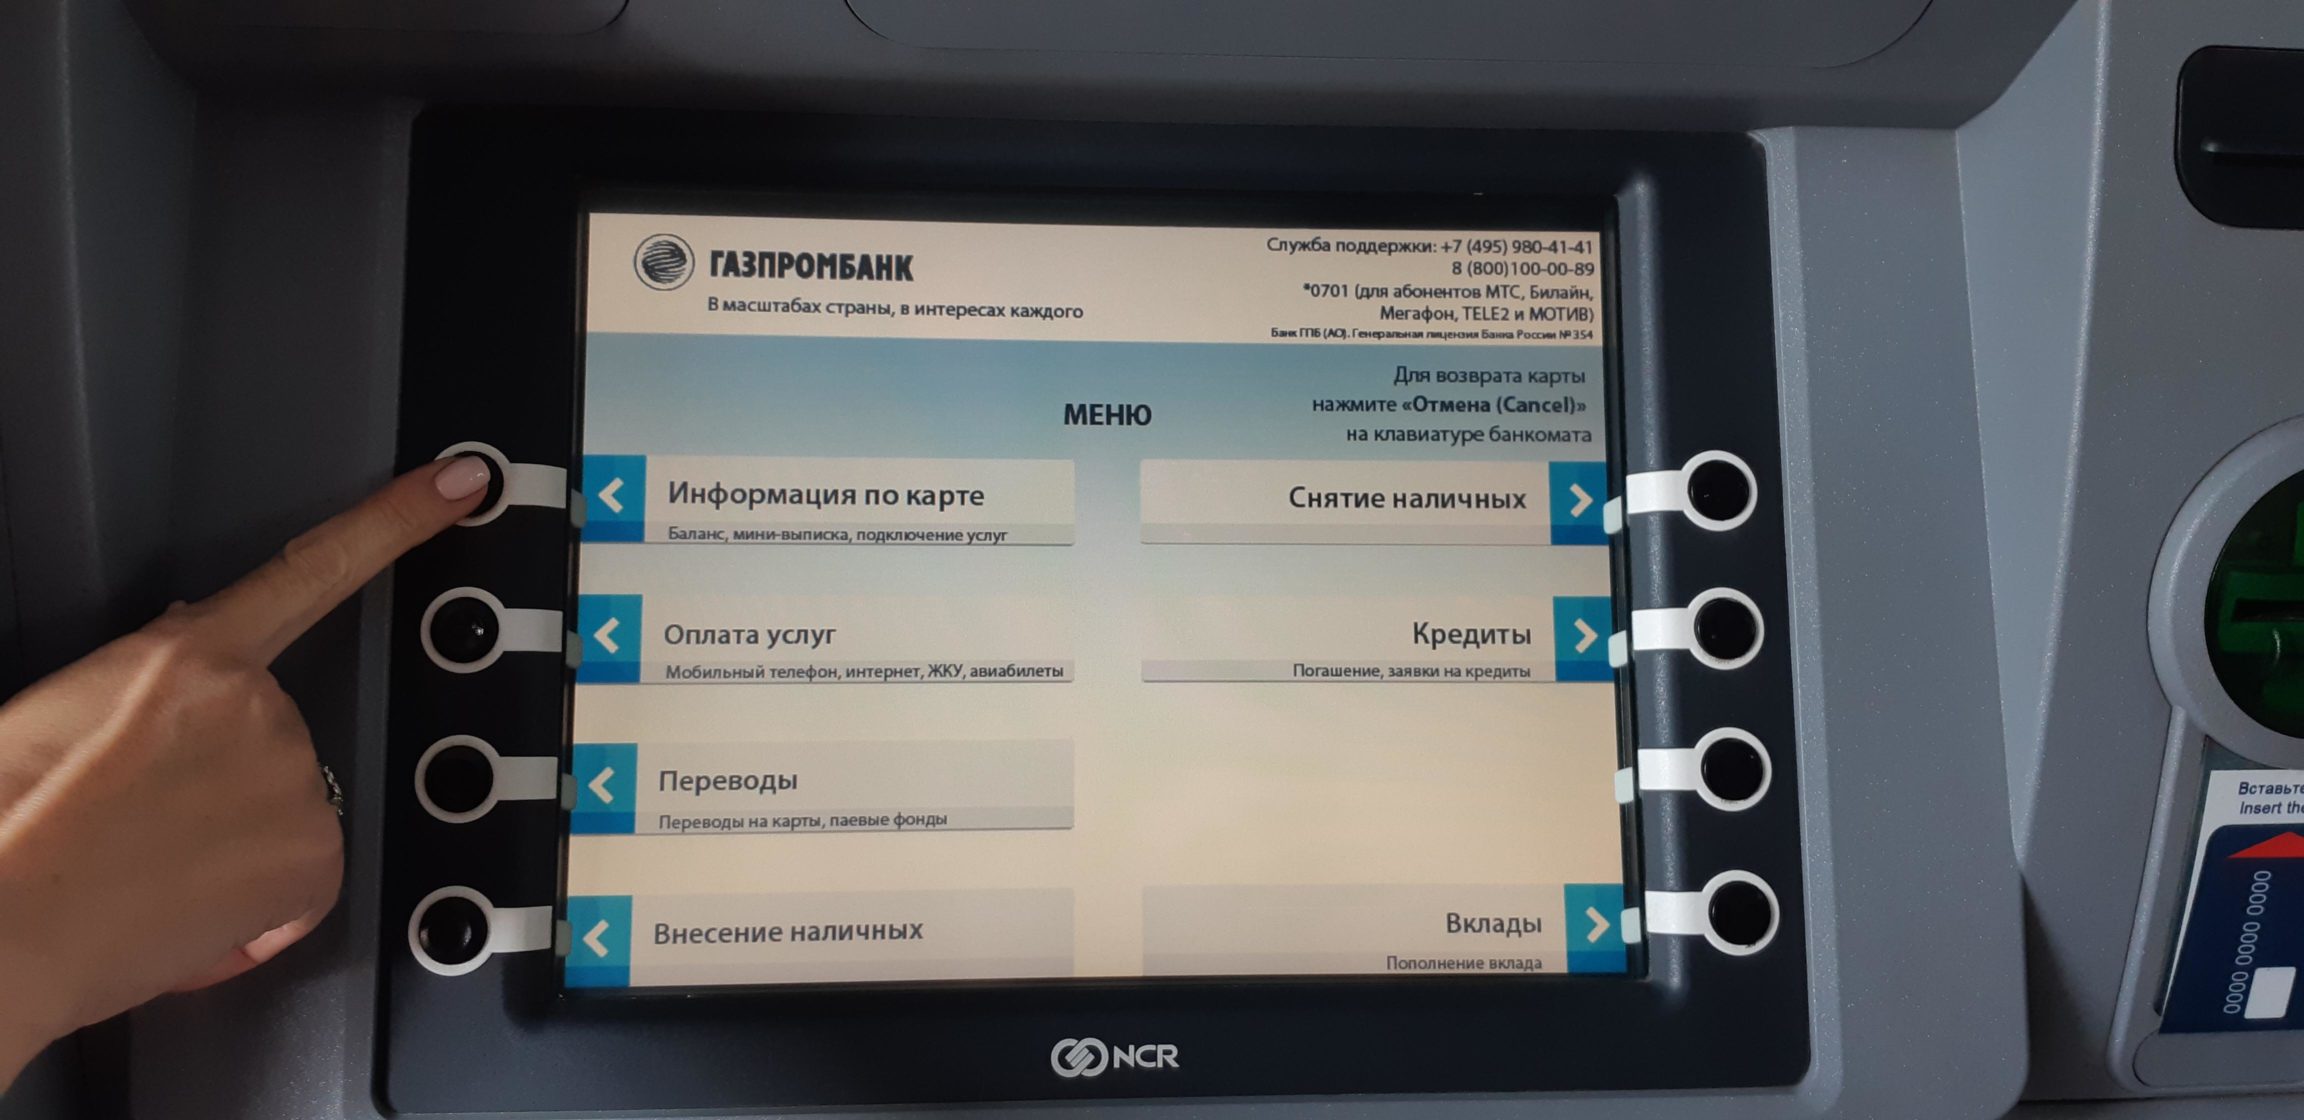 Газпромбанк можно снимать в сбербанке. Меню банкомата Газпромбанка. Экран банкомата Газпромбанк. Газпромбанк прикрепить карту к номеру телефона через Банкомат. Как поменять номер телефона в Газпромбанке через Банкомат.